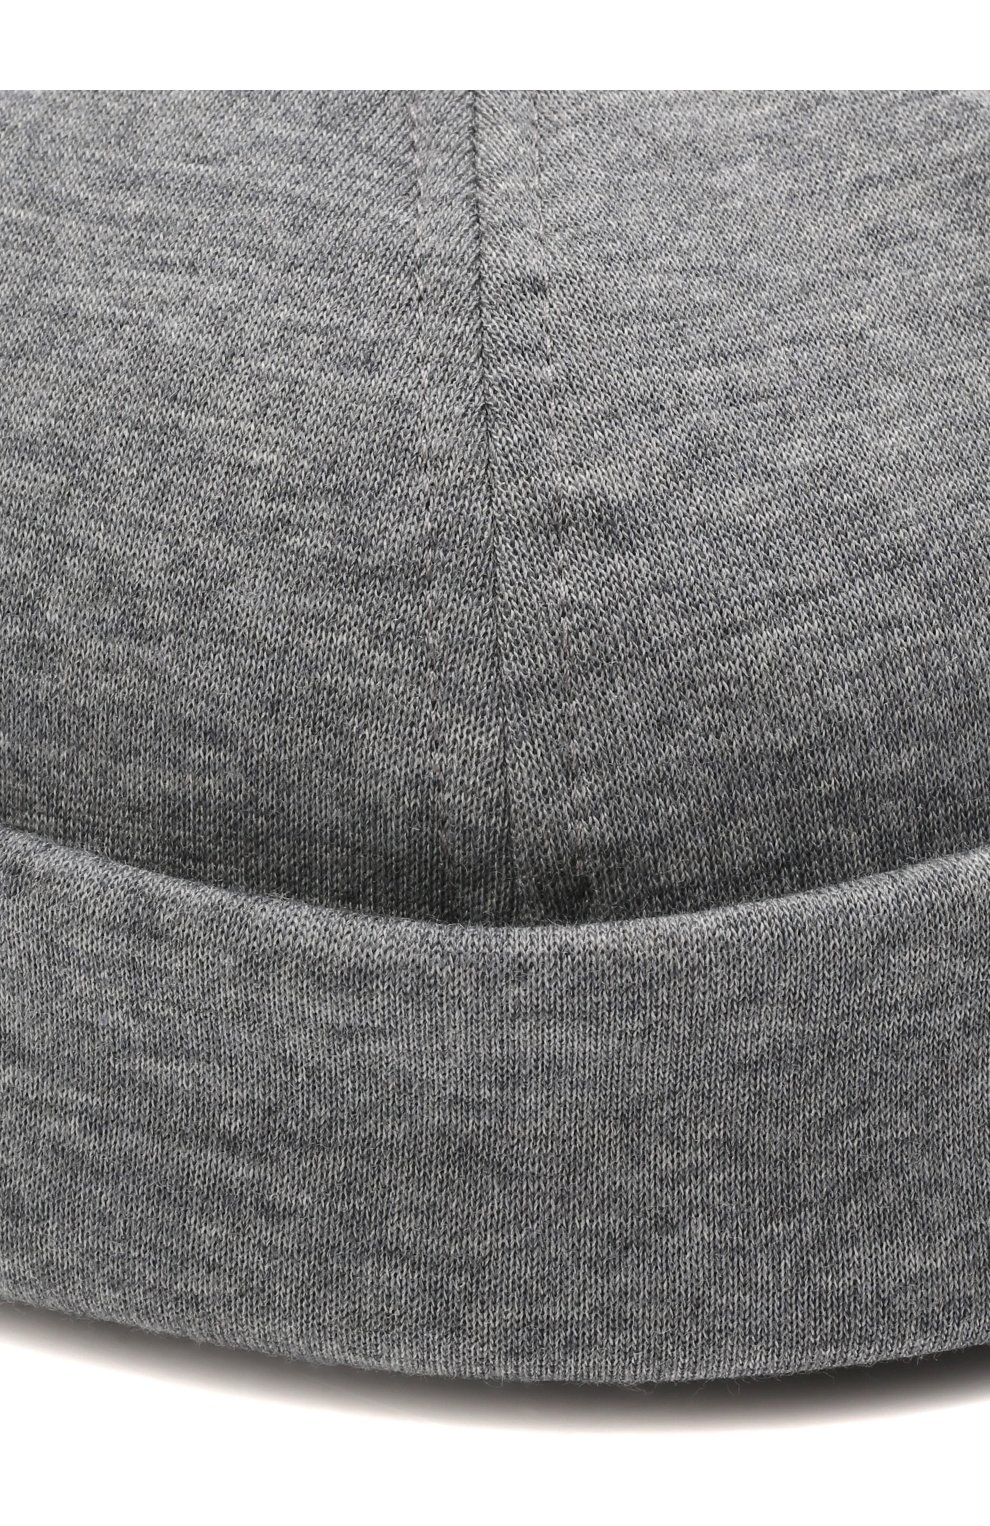 Мужская шерстяная шапка Z ZEGNA серого цвета, арт. Z3I77H/B3W | Фото 3 (Материал: Текстиль, Шерсть)